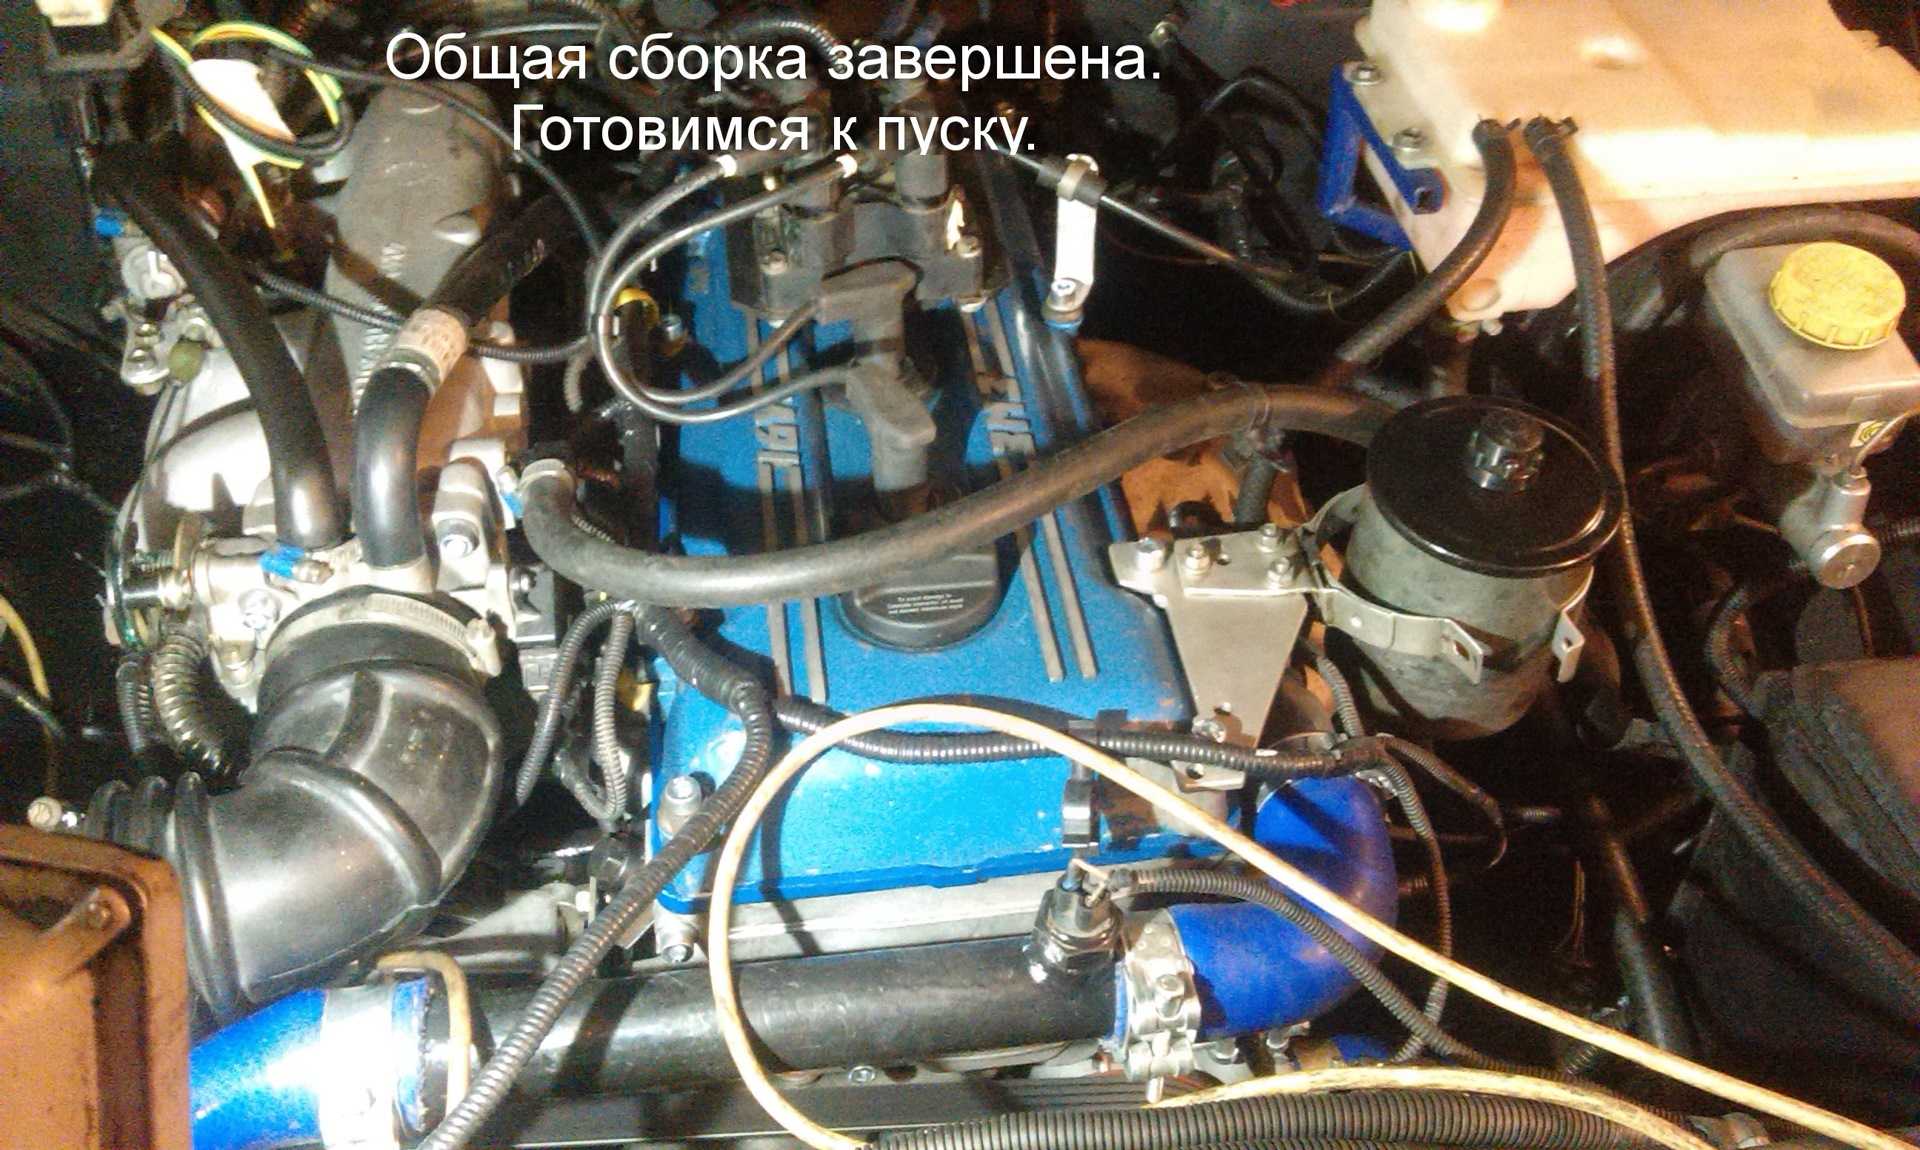 Двигатель змз-405 инжектор : характеристики, фото и проблемы